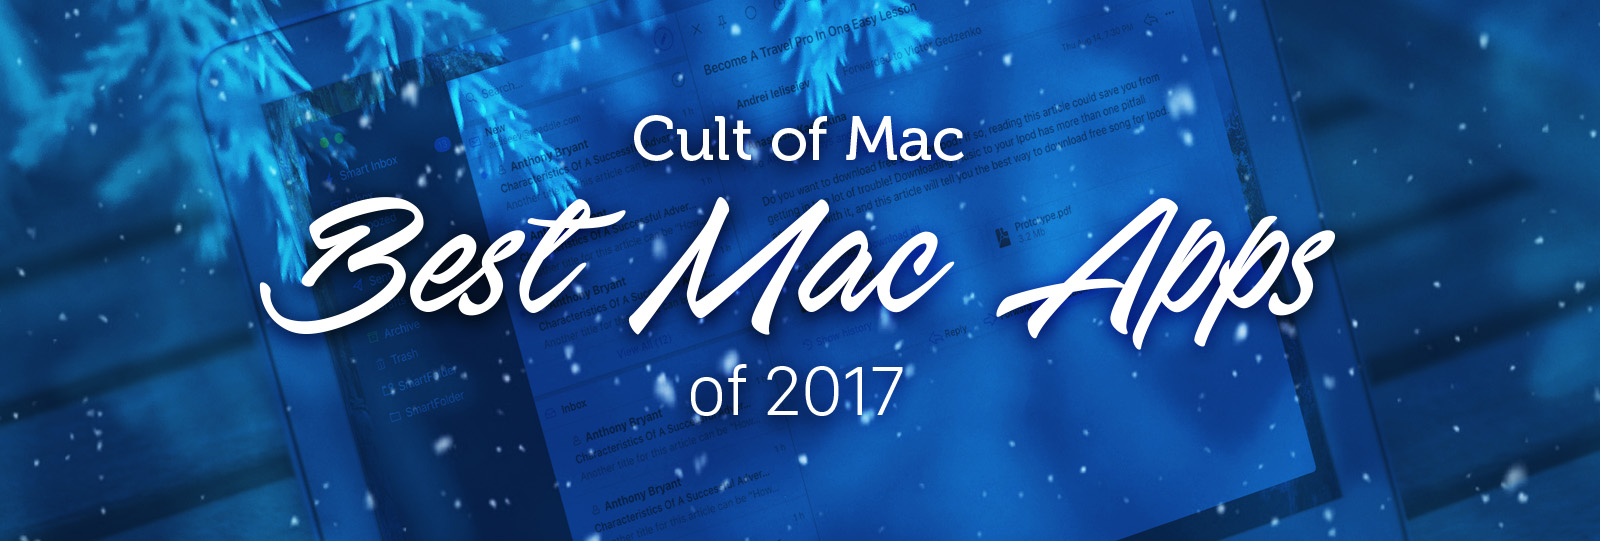 Best macOS apps 2017